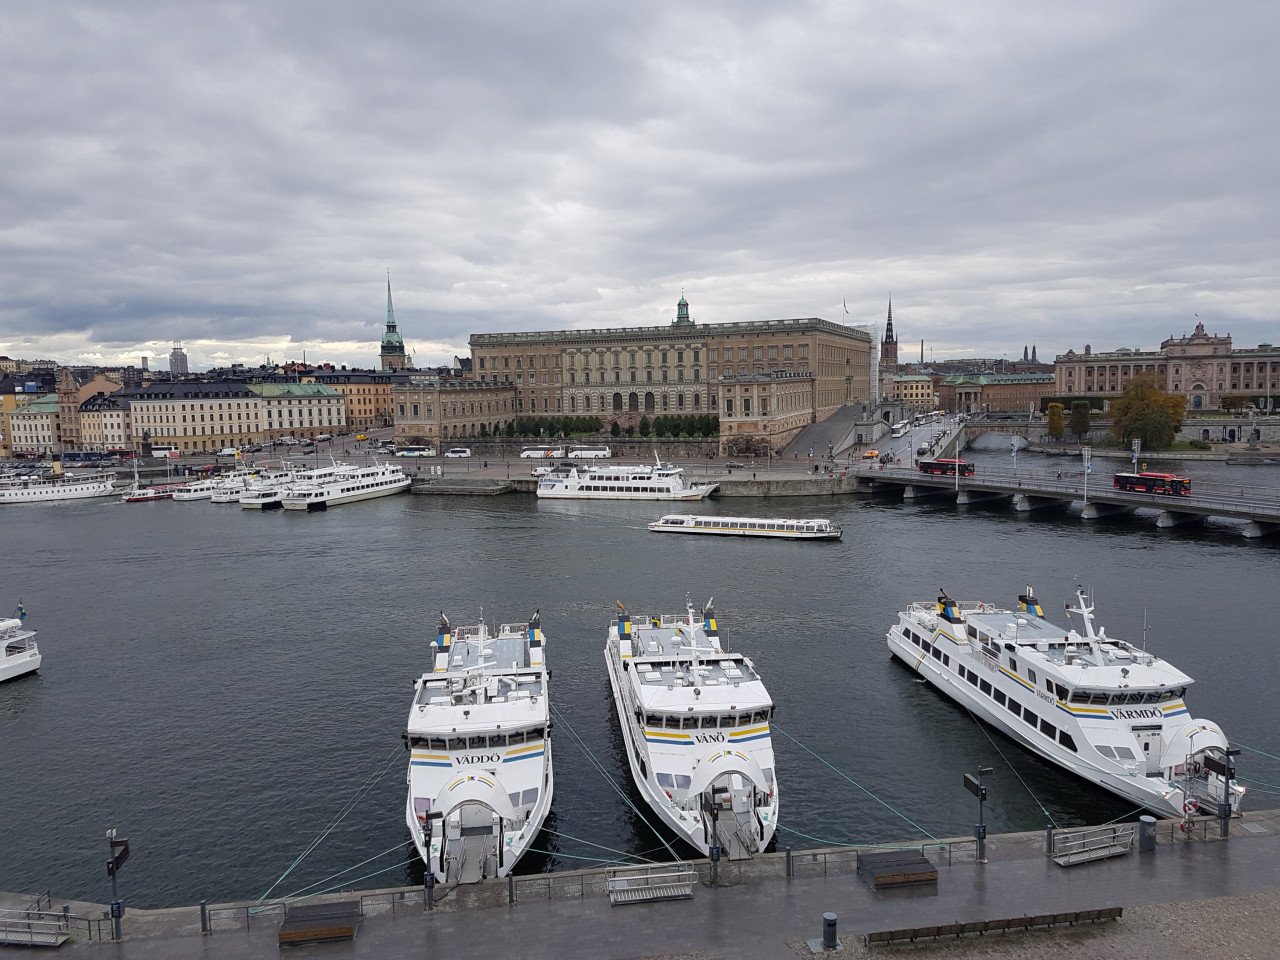 Pemandangan Istana DiRaja Sweden dari jendela hotel mewah The Grand Hotel